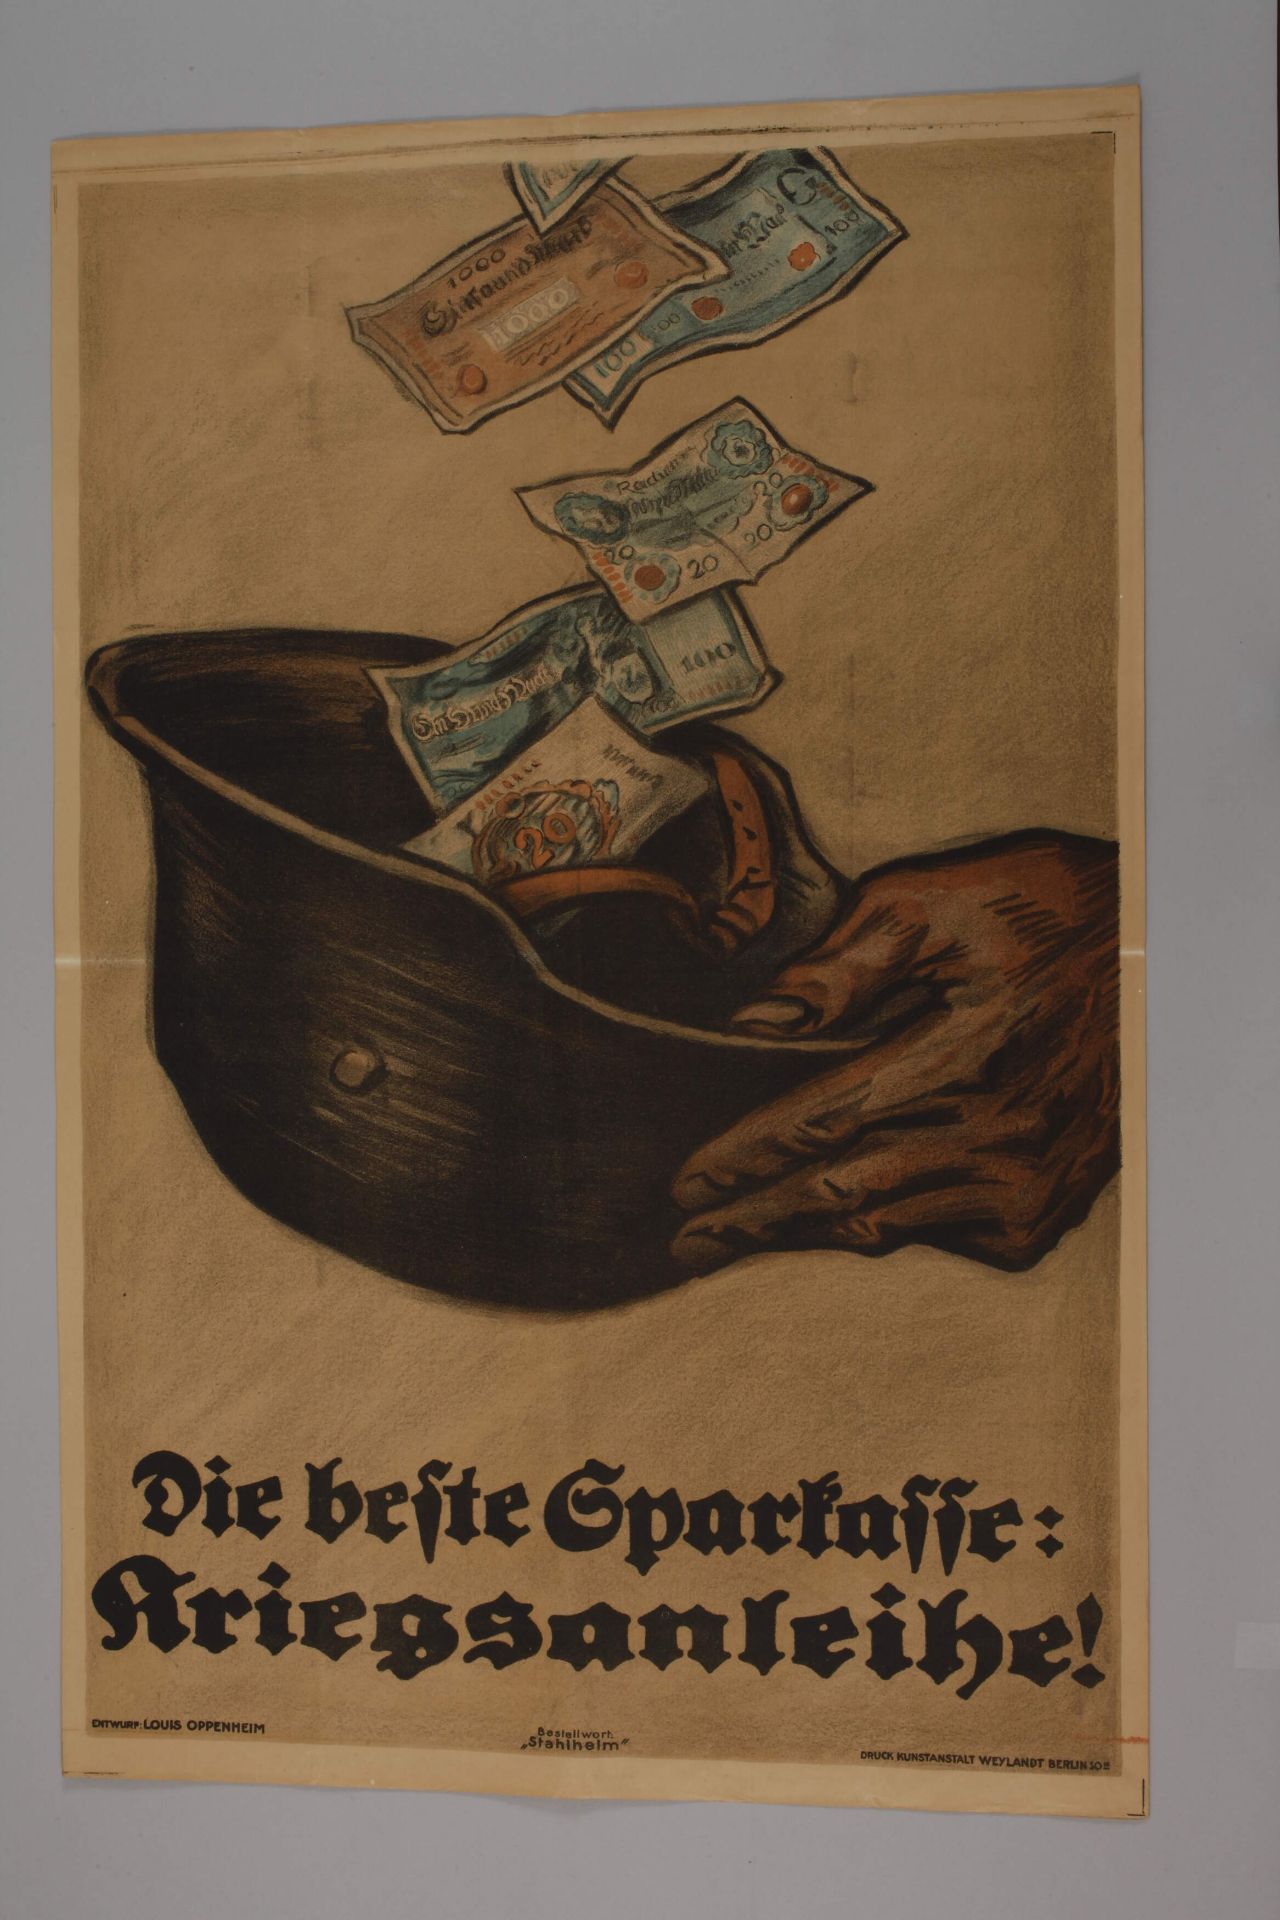 War bond poster, World War 1 - Image 2 of 4